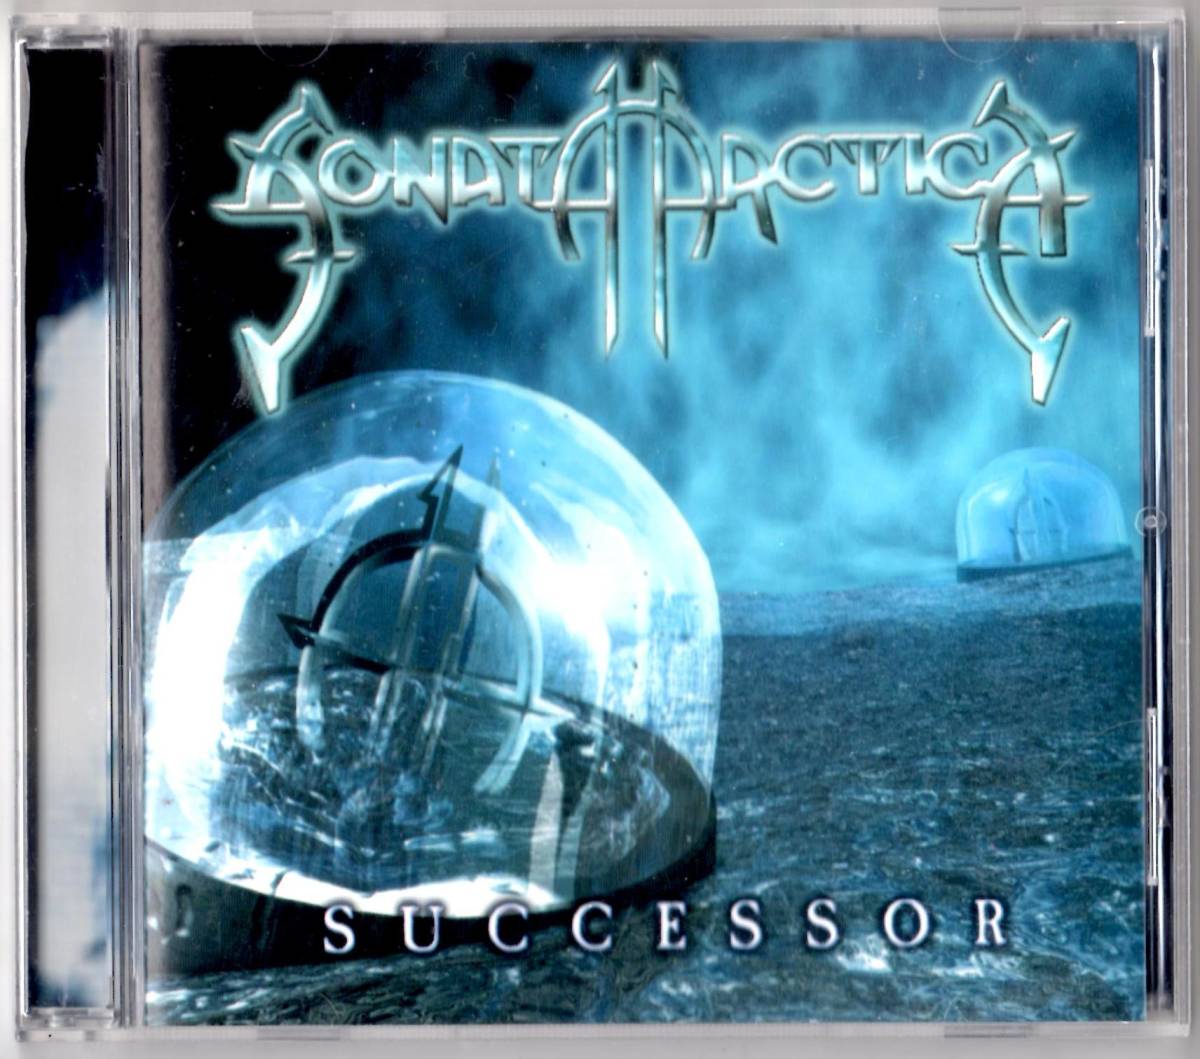 Used ミニ・アルバムCD 輸入盤 ソナタ・アークティカ Sonata Arctica『サクセサー』- Successor (2000年)全7曲EU盤